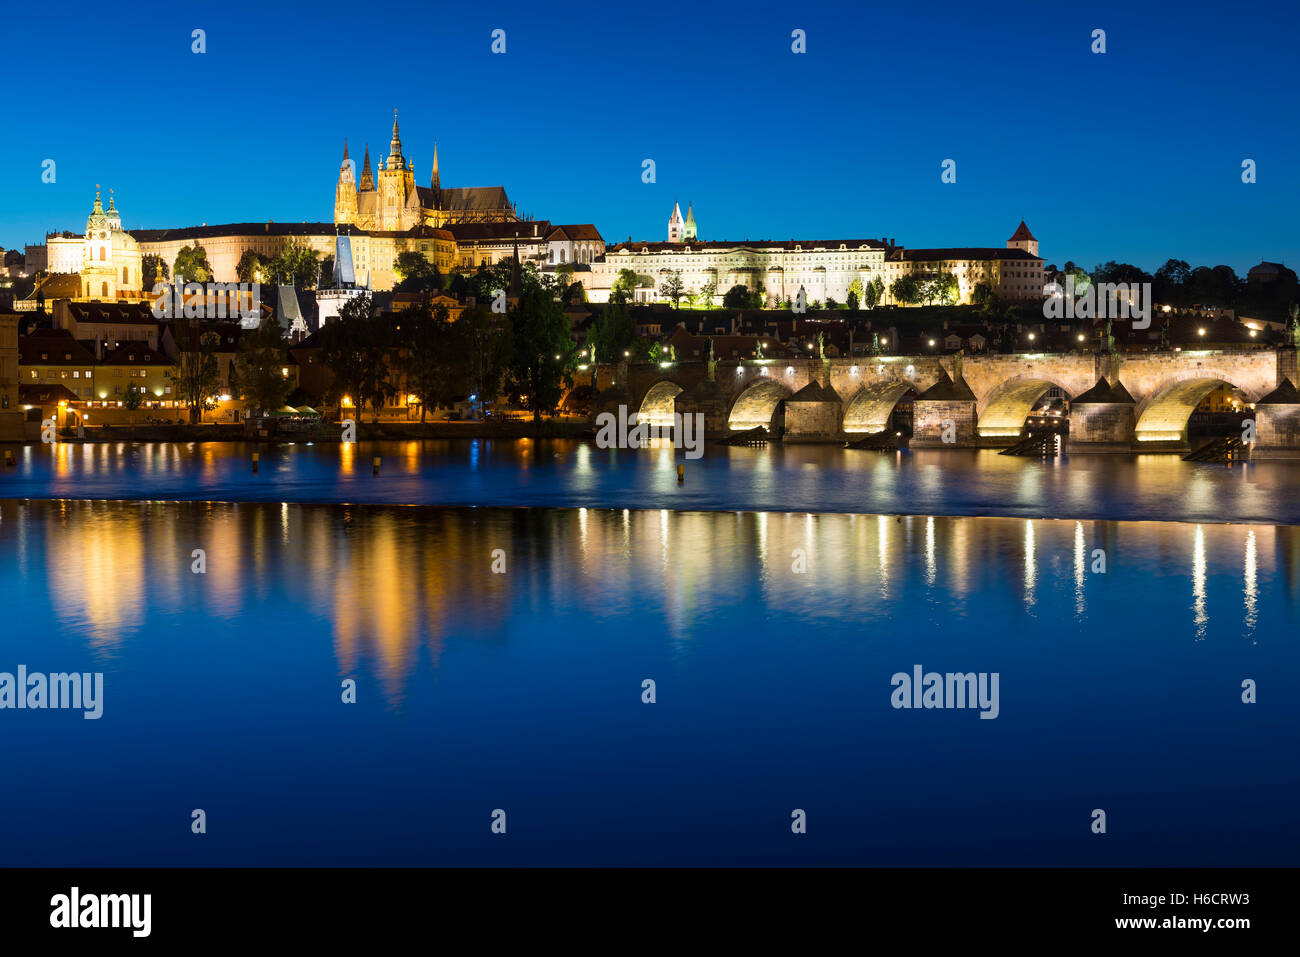 Charles Bridge, Vltava River, Prague Castle, St. Vitus Cathedral, Hradcny, Castle District, Prague, Czech Republic Stock Photo